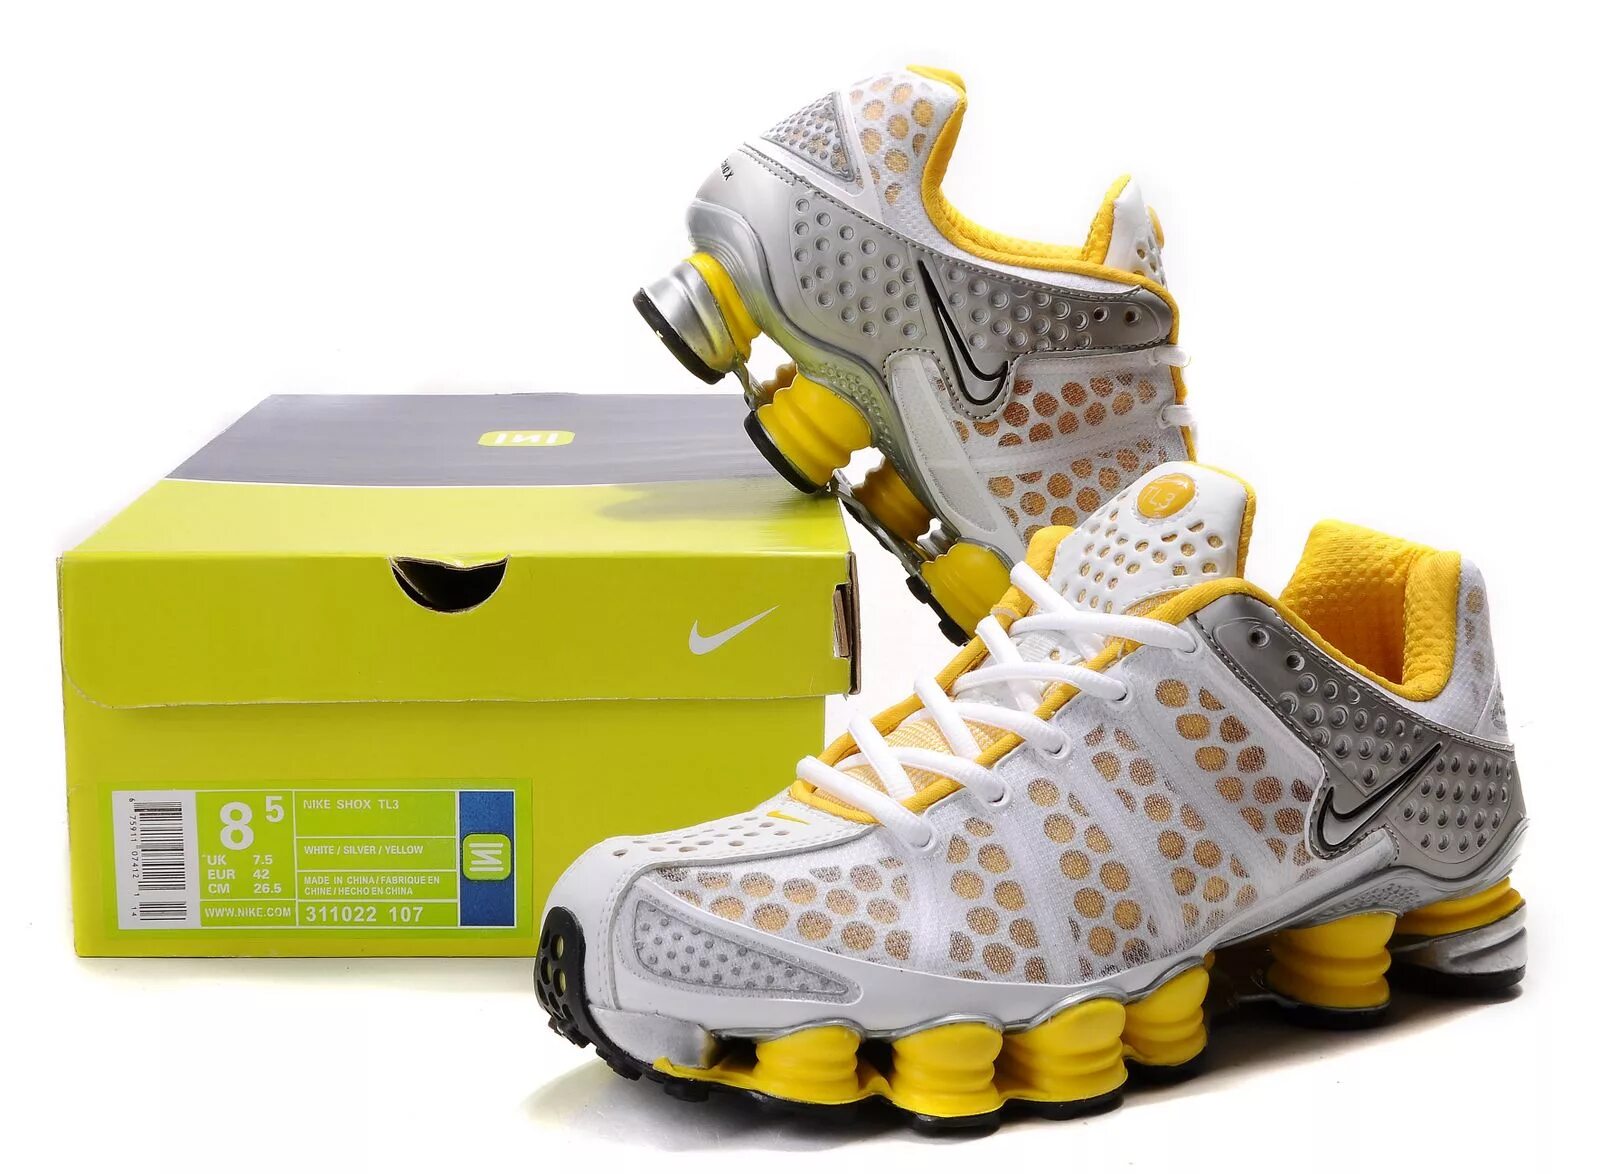 Nike shox tl оригинал. Nike Shox tl3. Nike Shox TL Yellow. Nike Shox 3. Nike Shox в желтой расцветке.